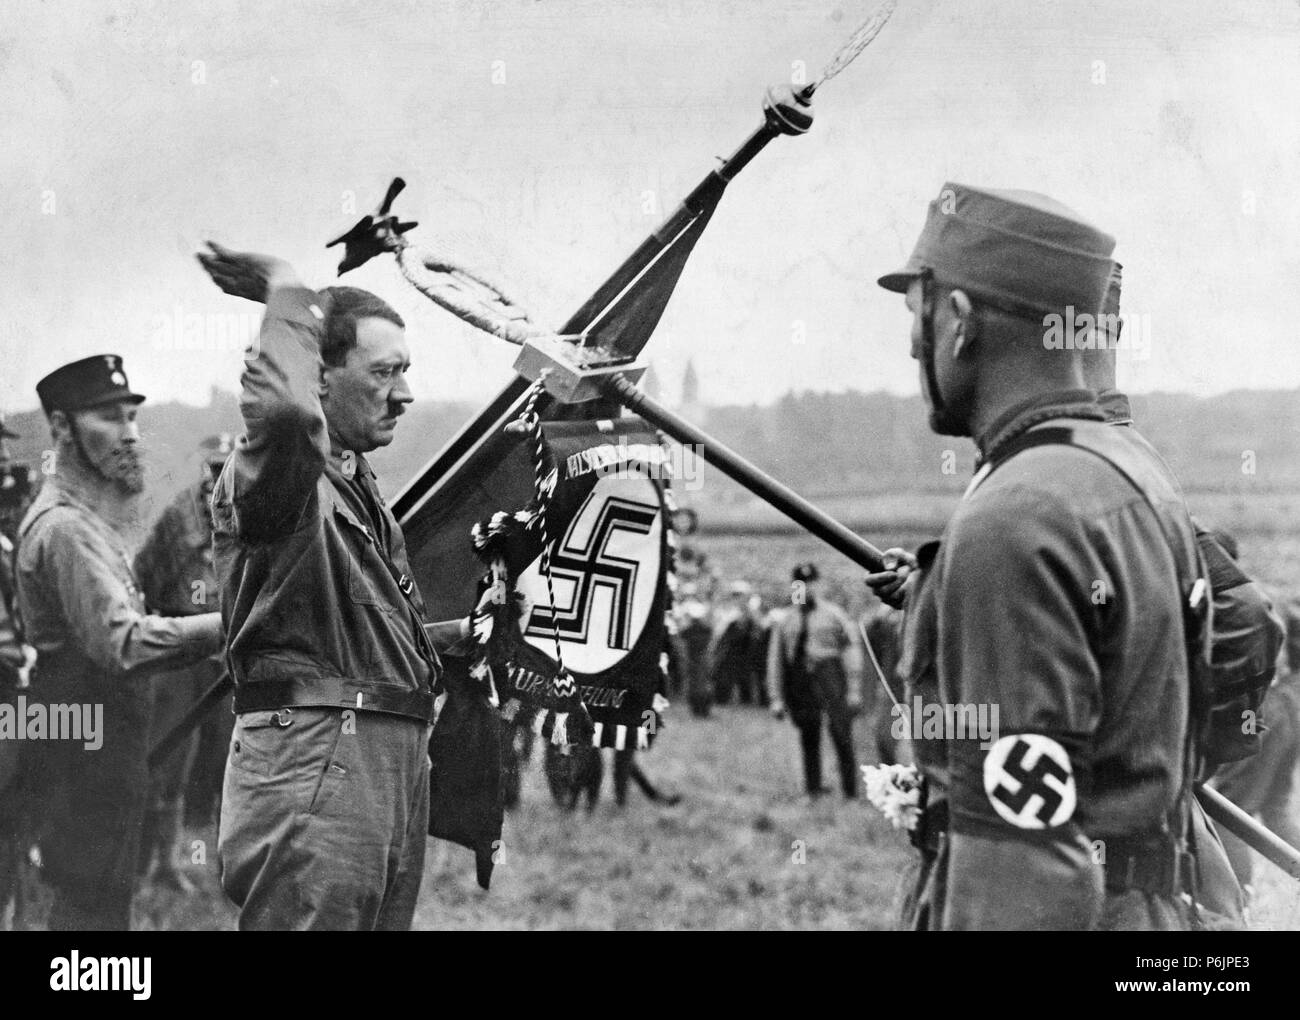 Adolf Hitler inaugure un drapeau du parti Nazi au cours d'un rassemblement du parti en Allemagne. Banque D'Images